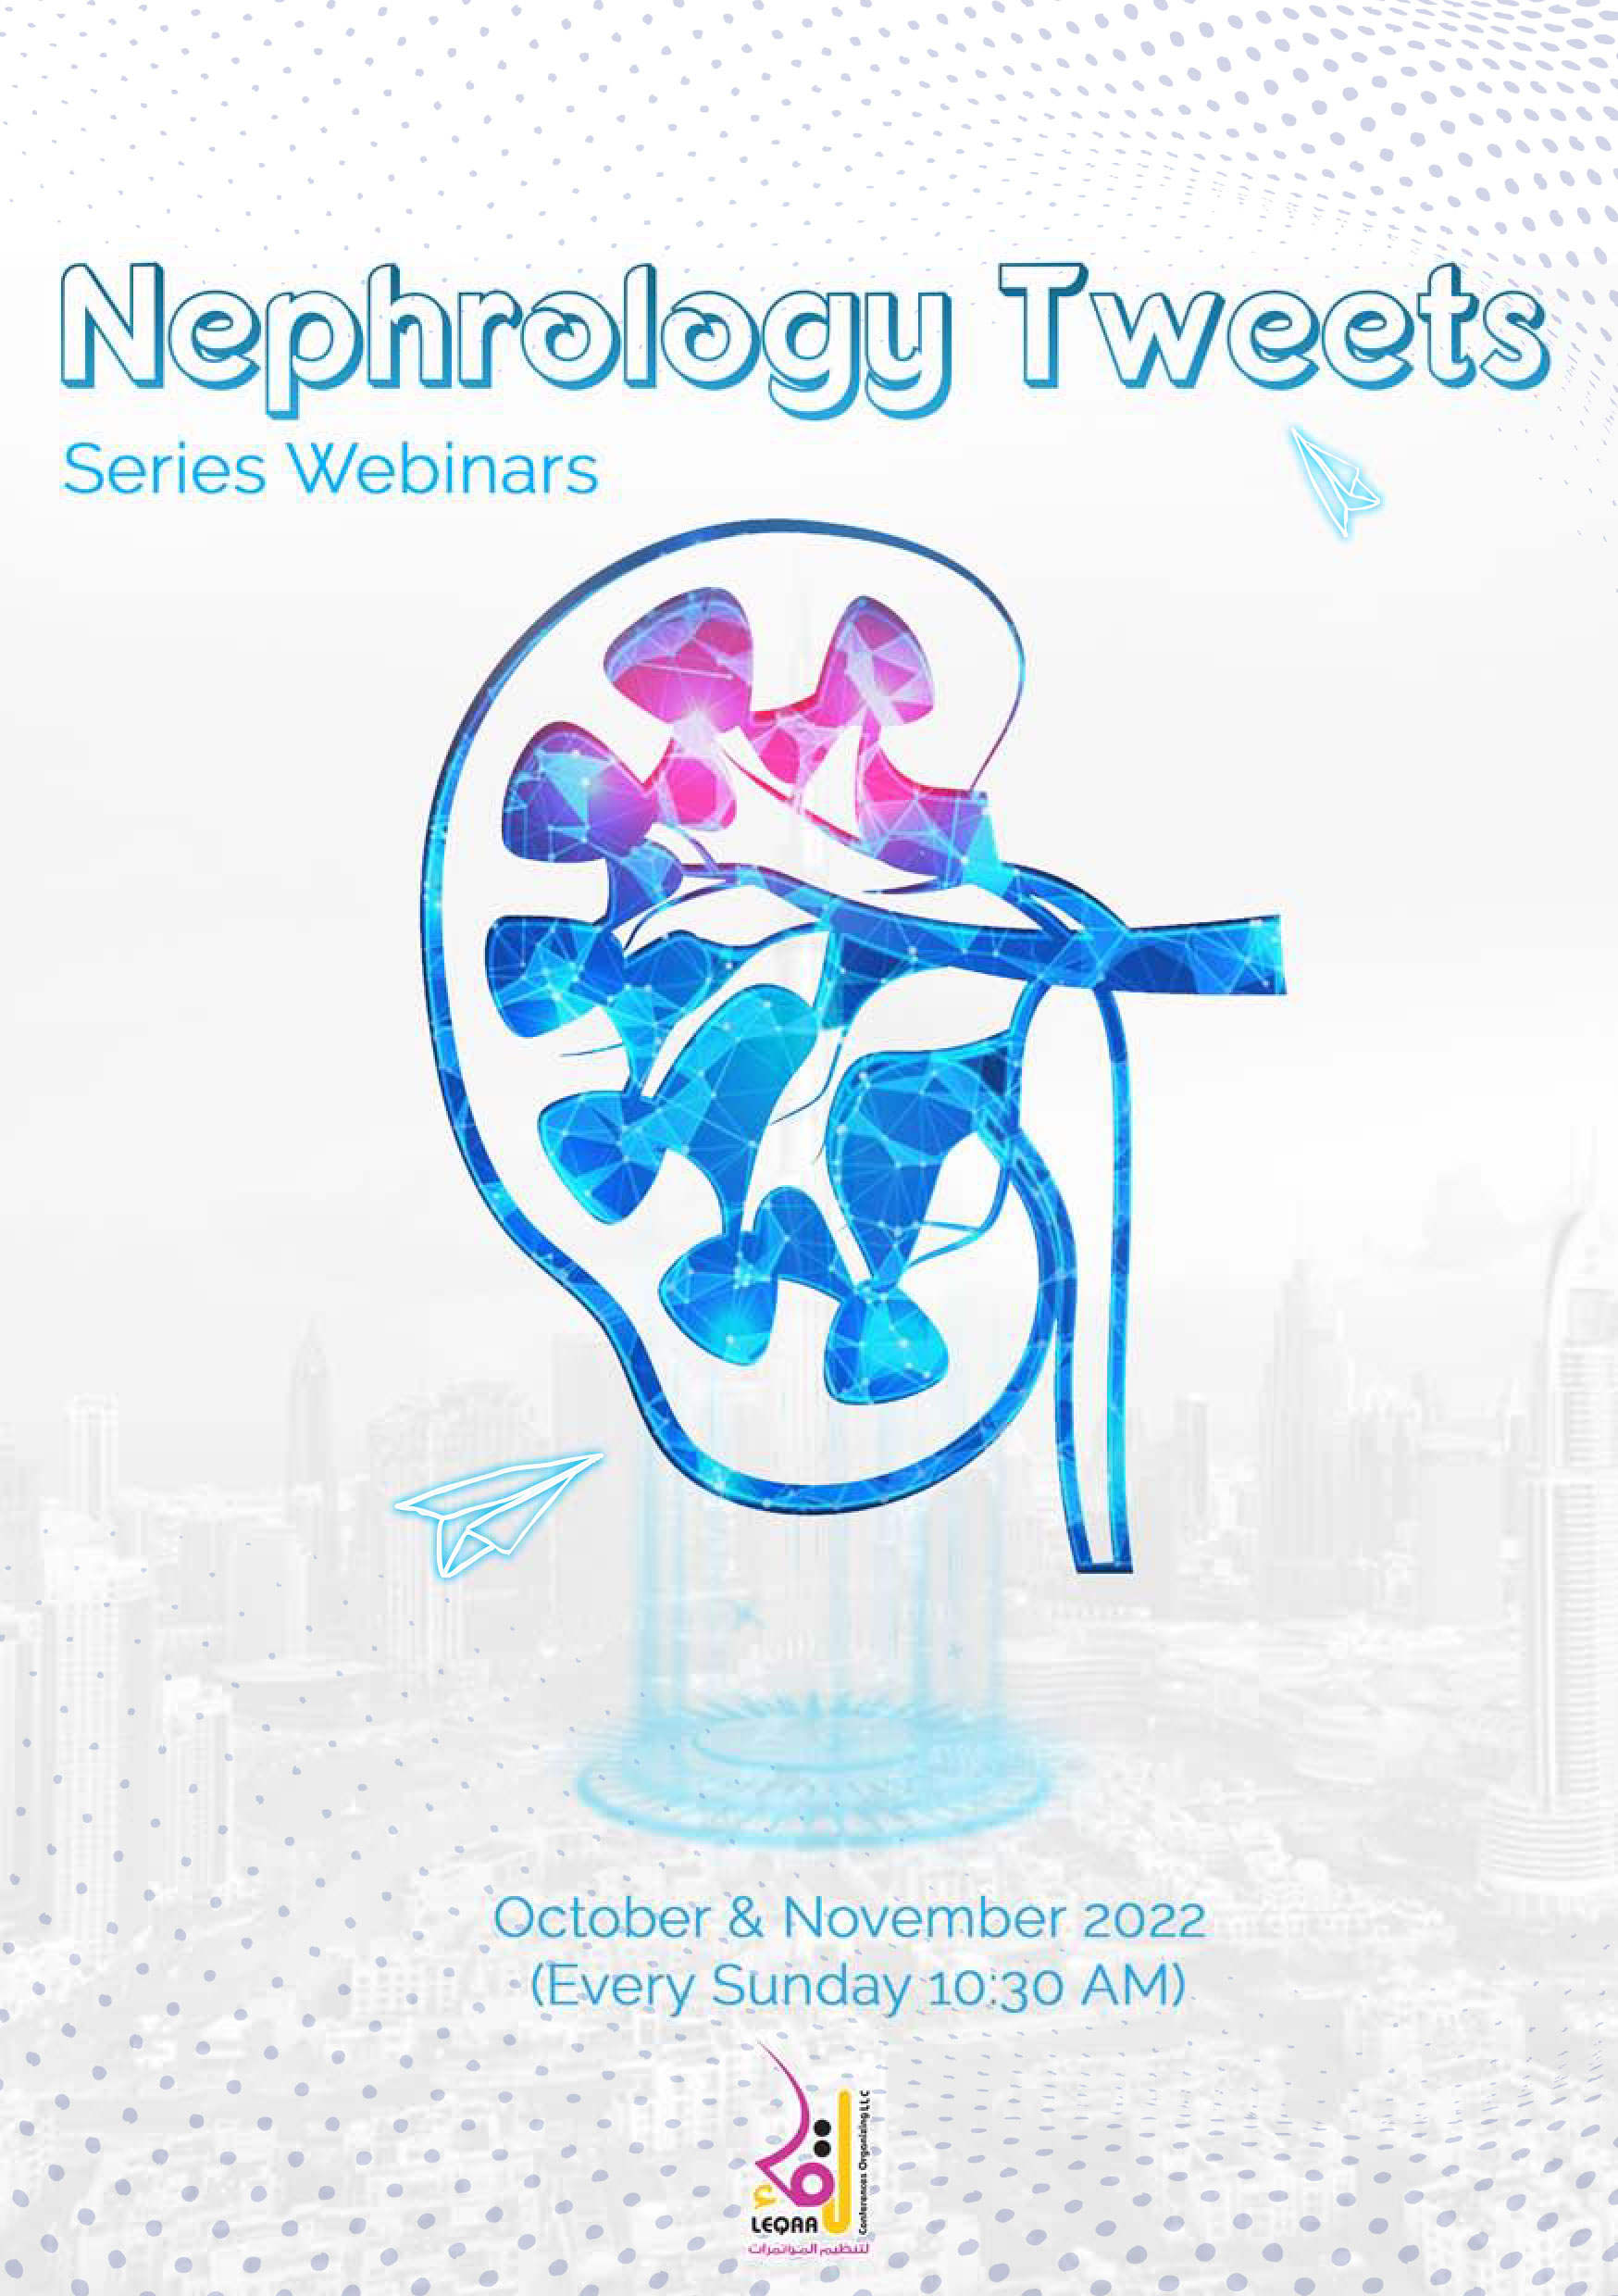 Nephrology Tweets Sponsorship Packages